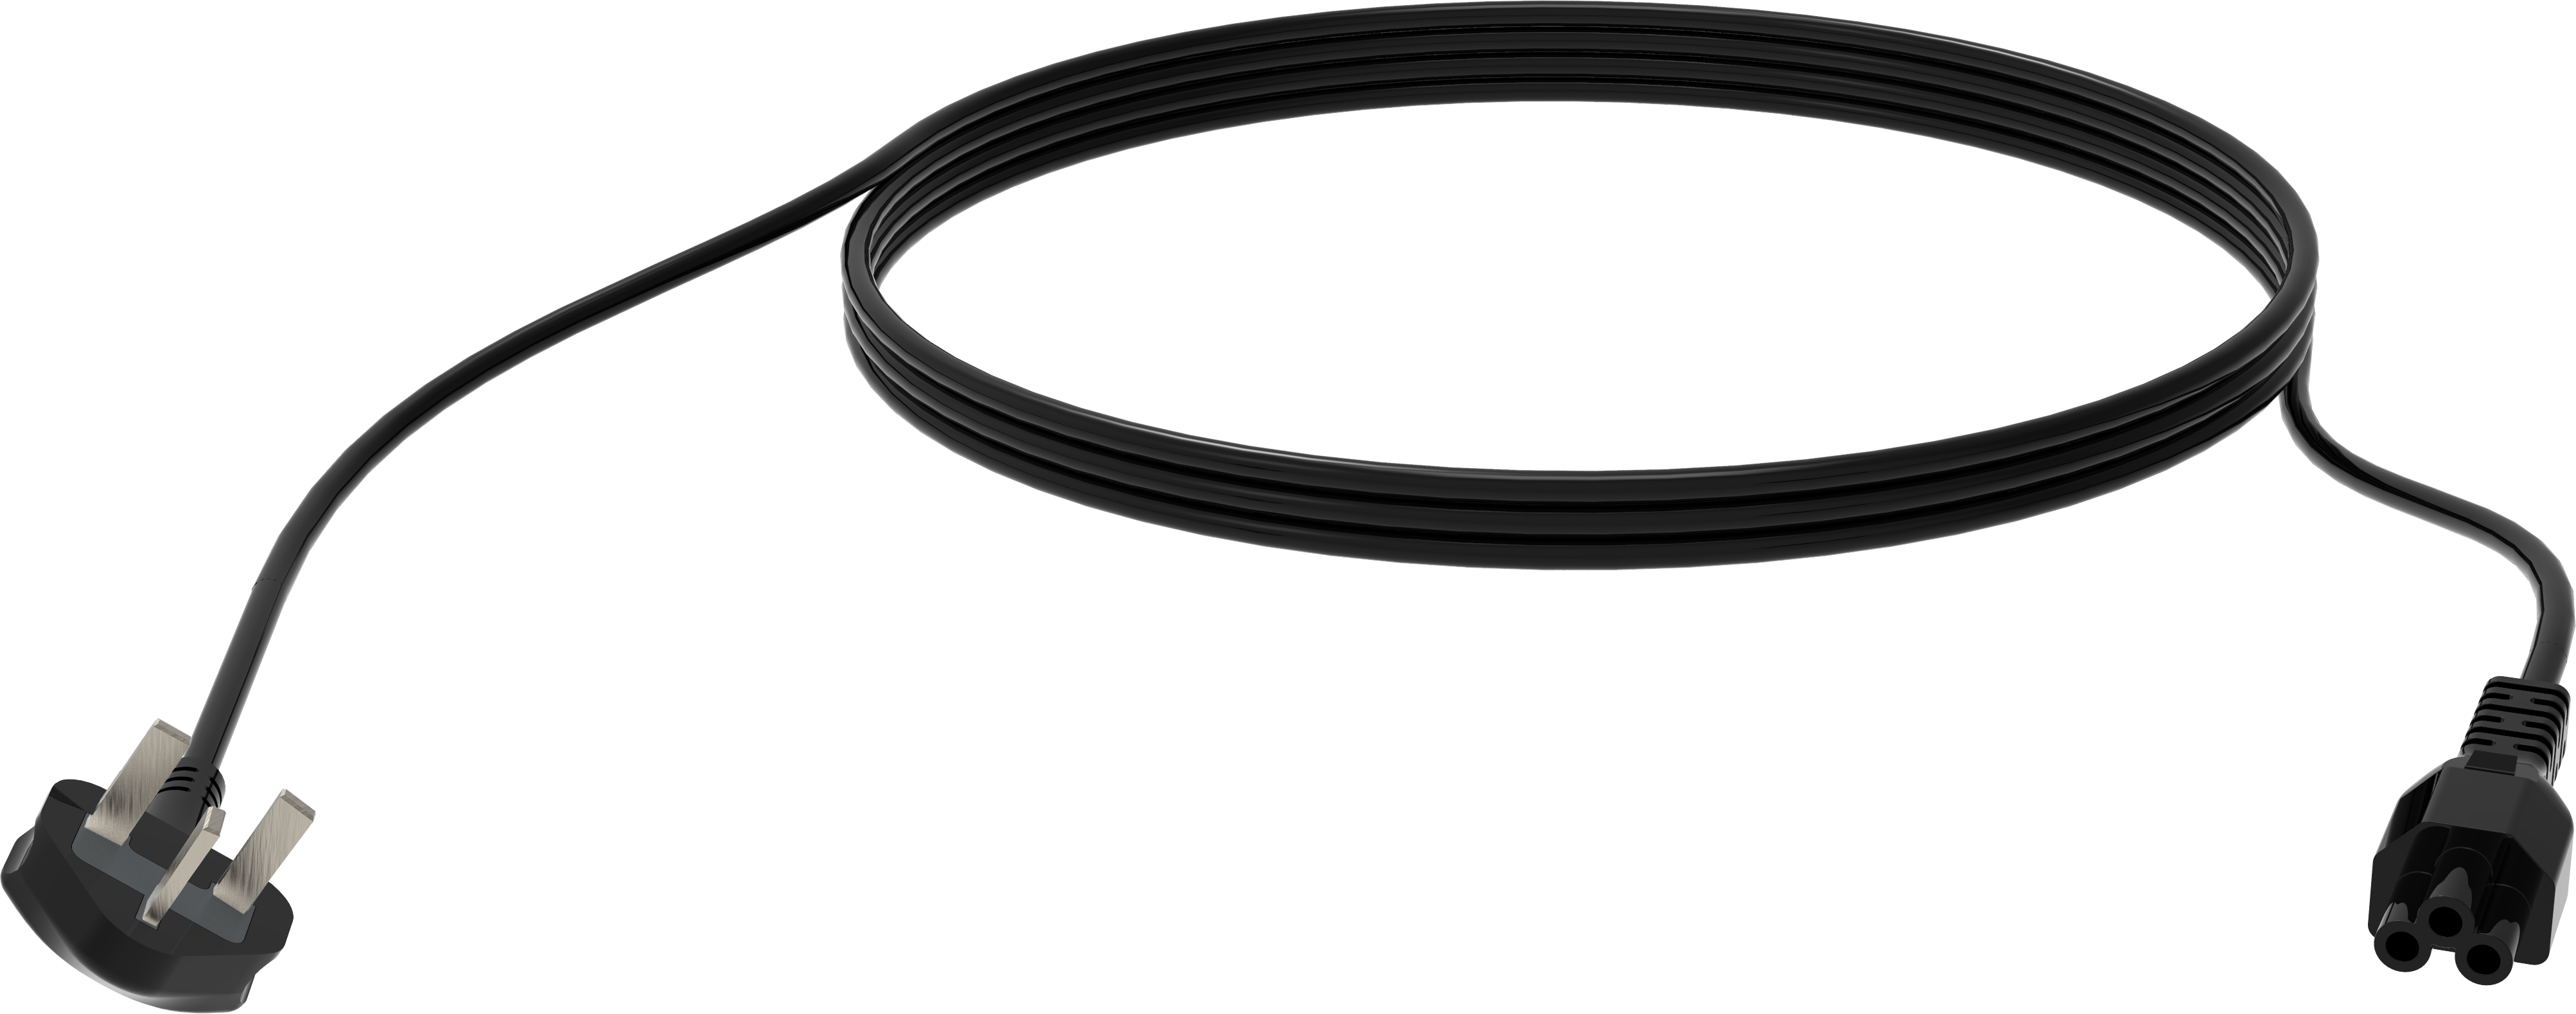 An image showing Câble d’alimentation britannique Cloverleaf noir de 3 m